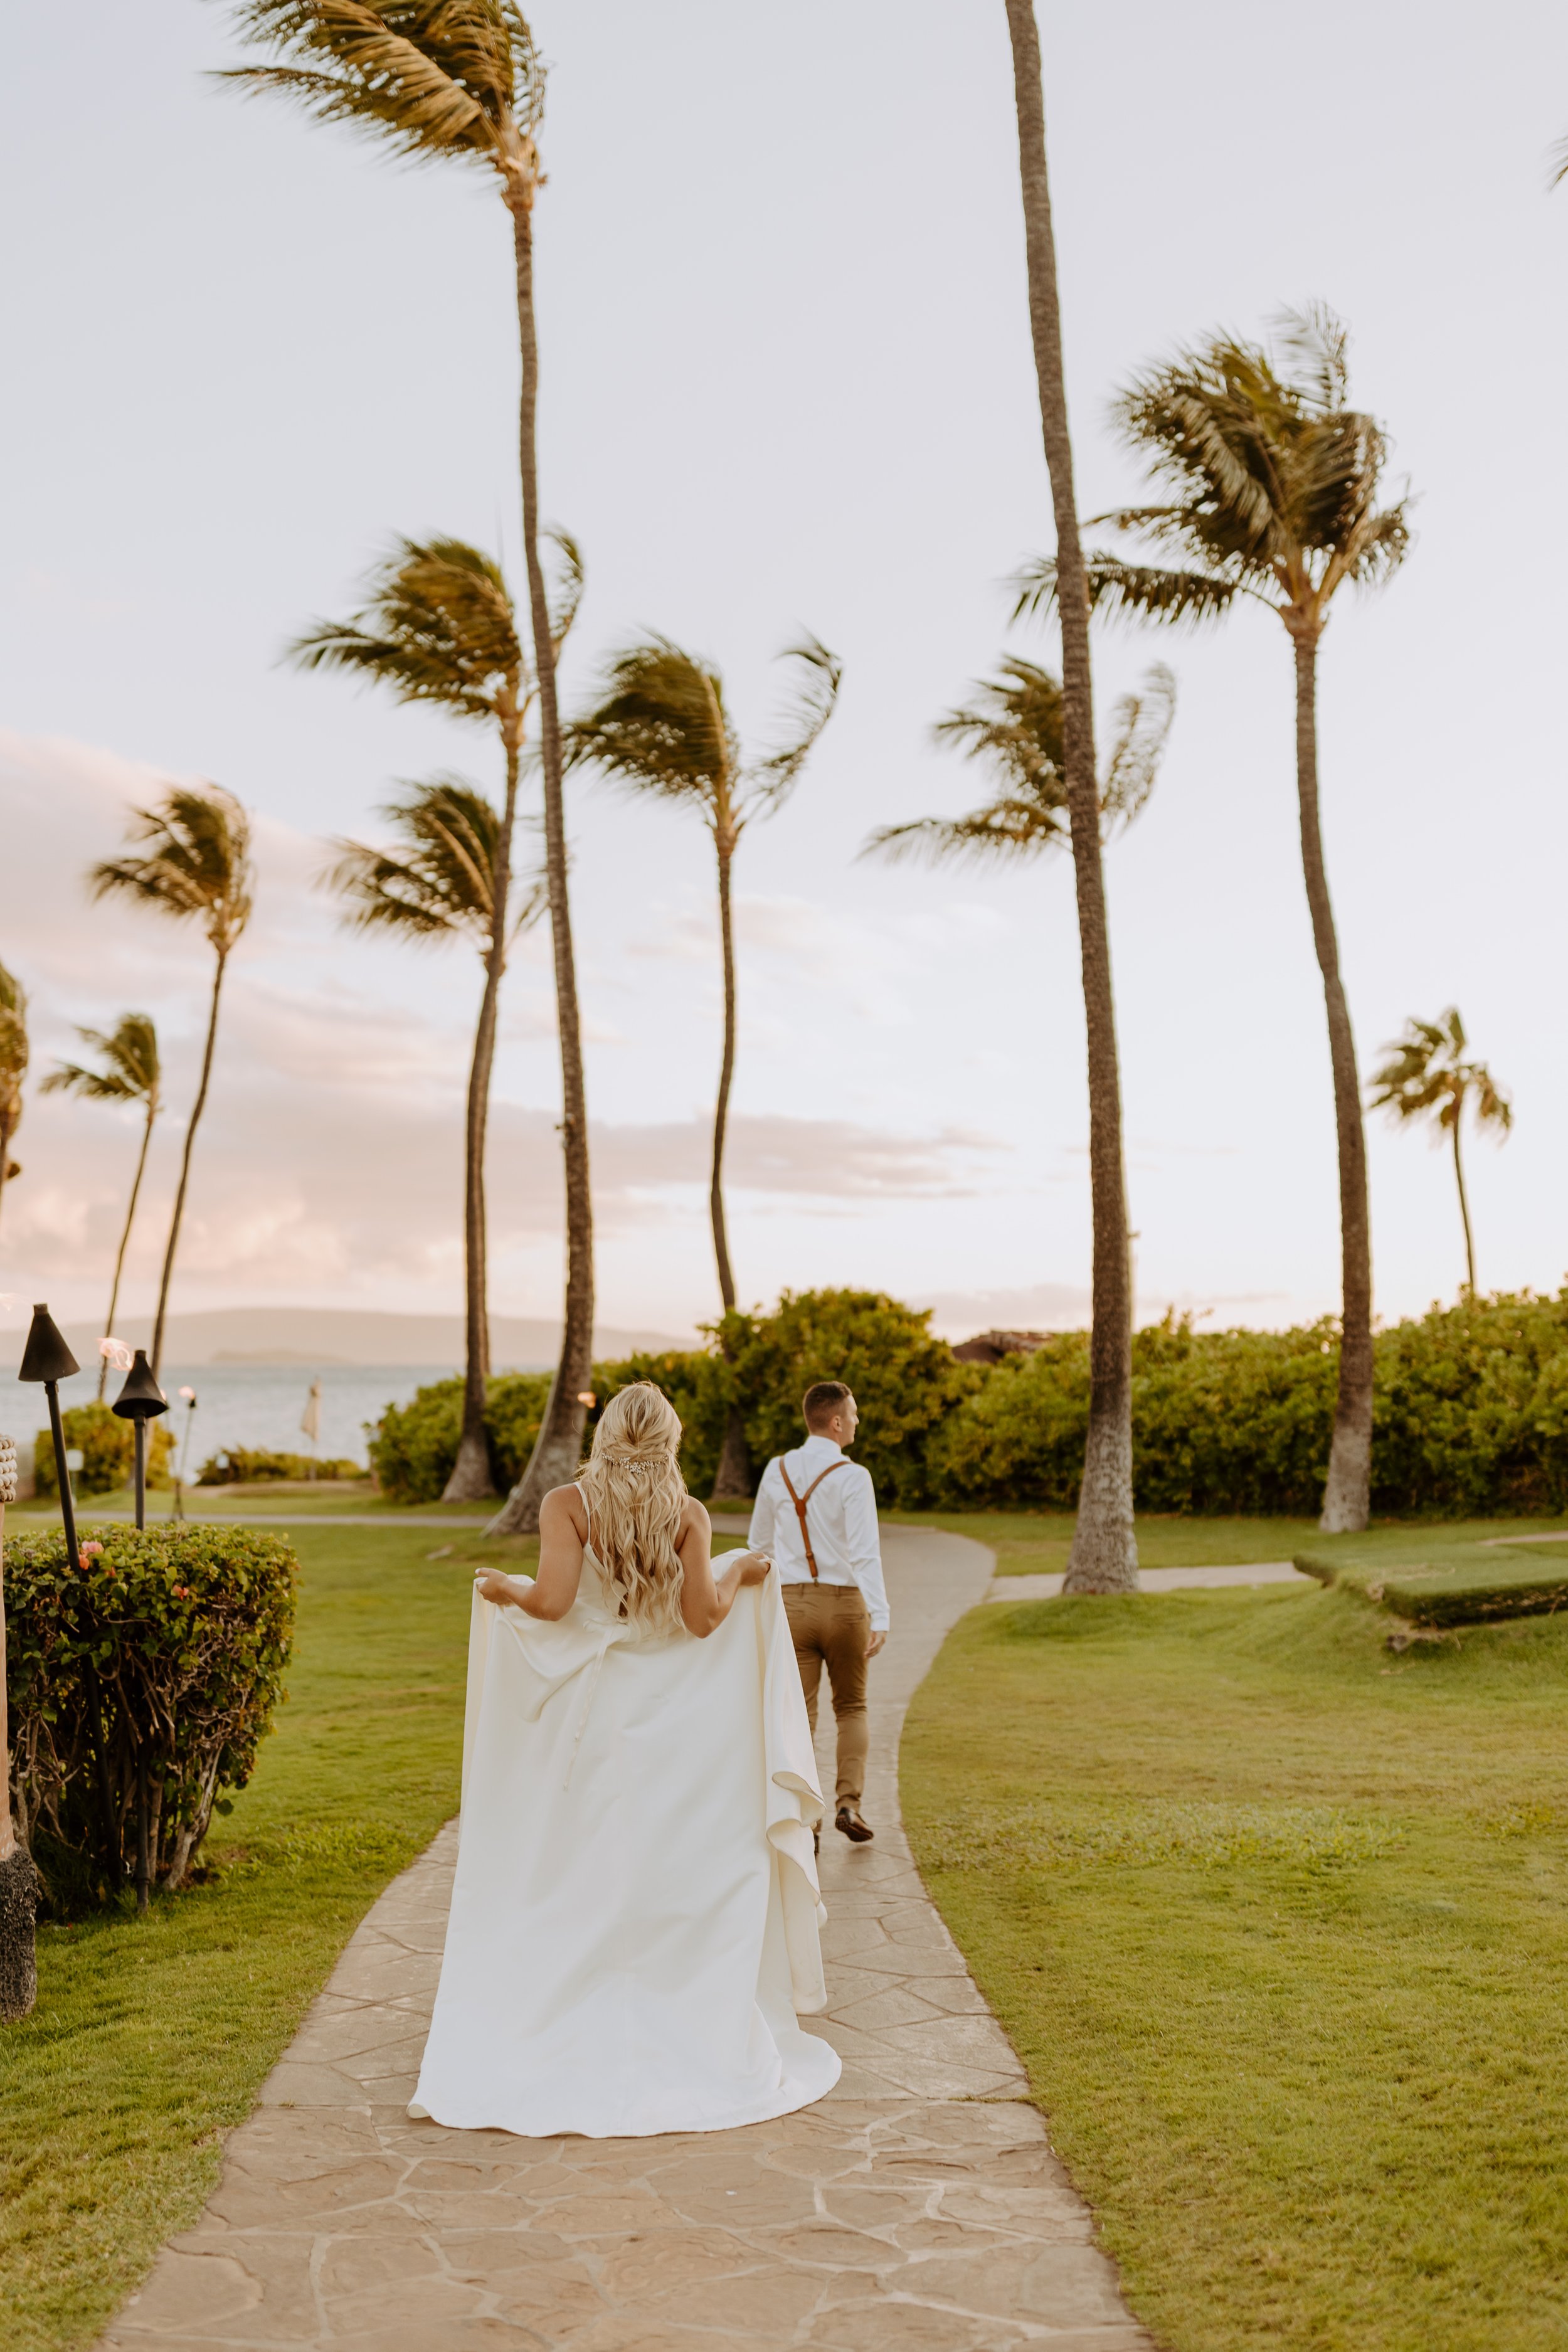 Makaili + Mac Lakin | Grand Wailea Maui Wedding - Hawaii Photographer480.jpg